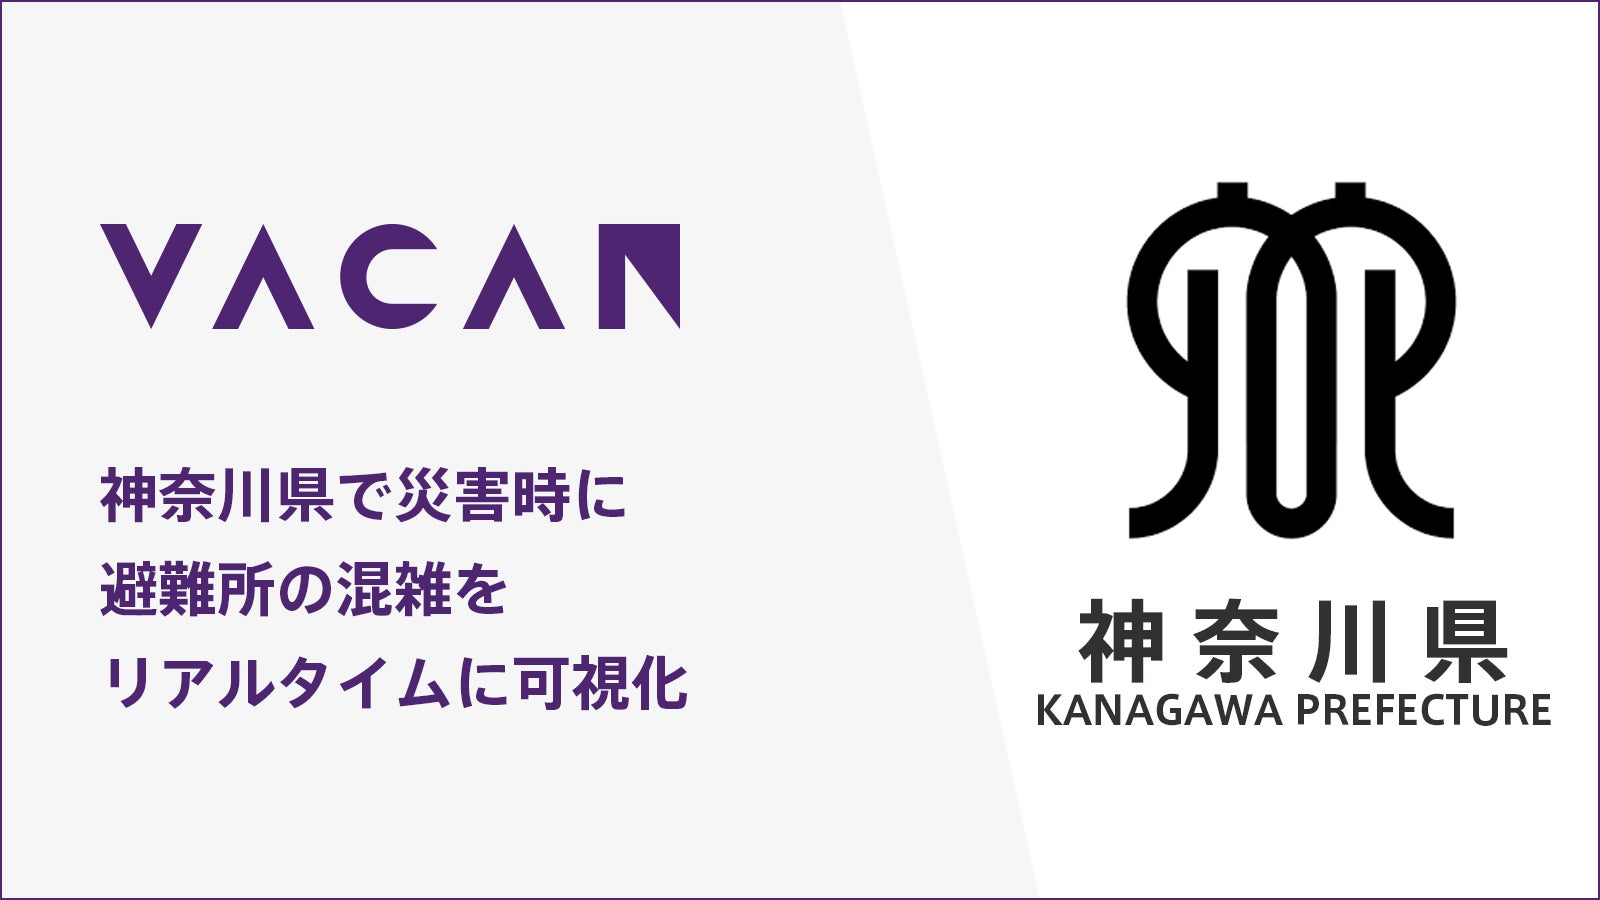 神奈川県、空き情報配信プラットフォーム「VACAN」を導入[ニュース]